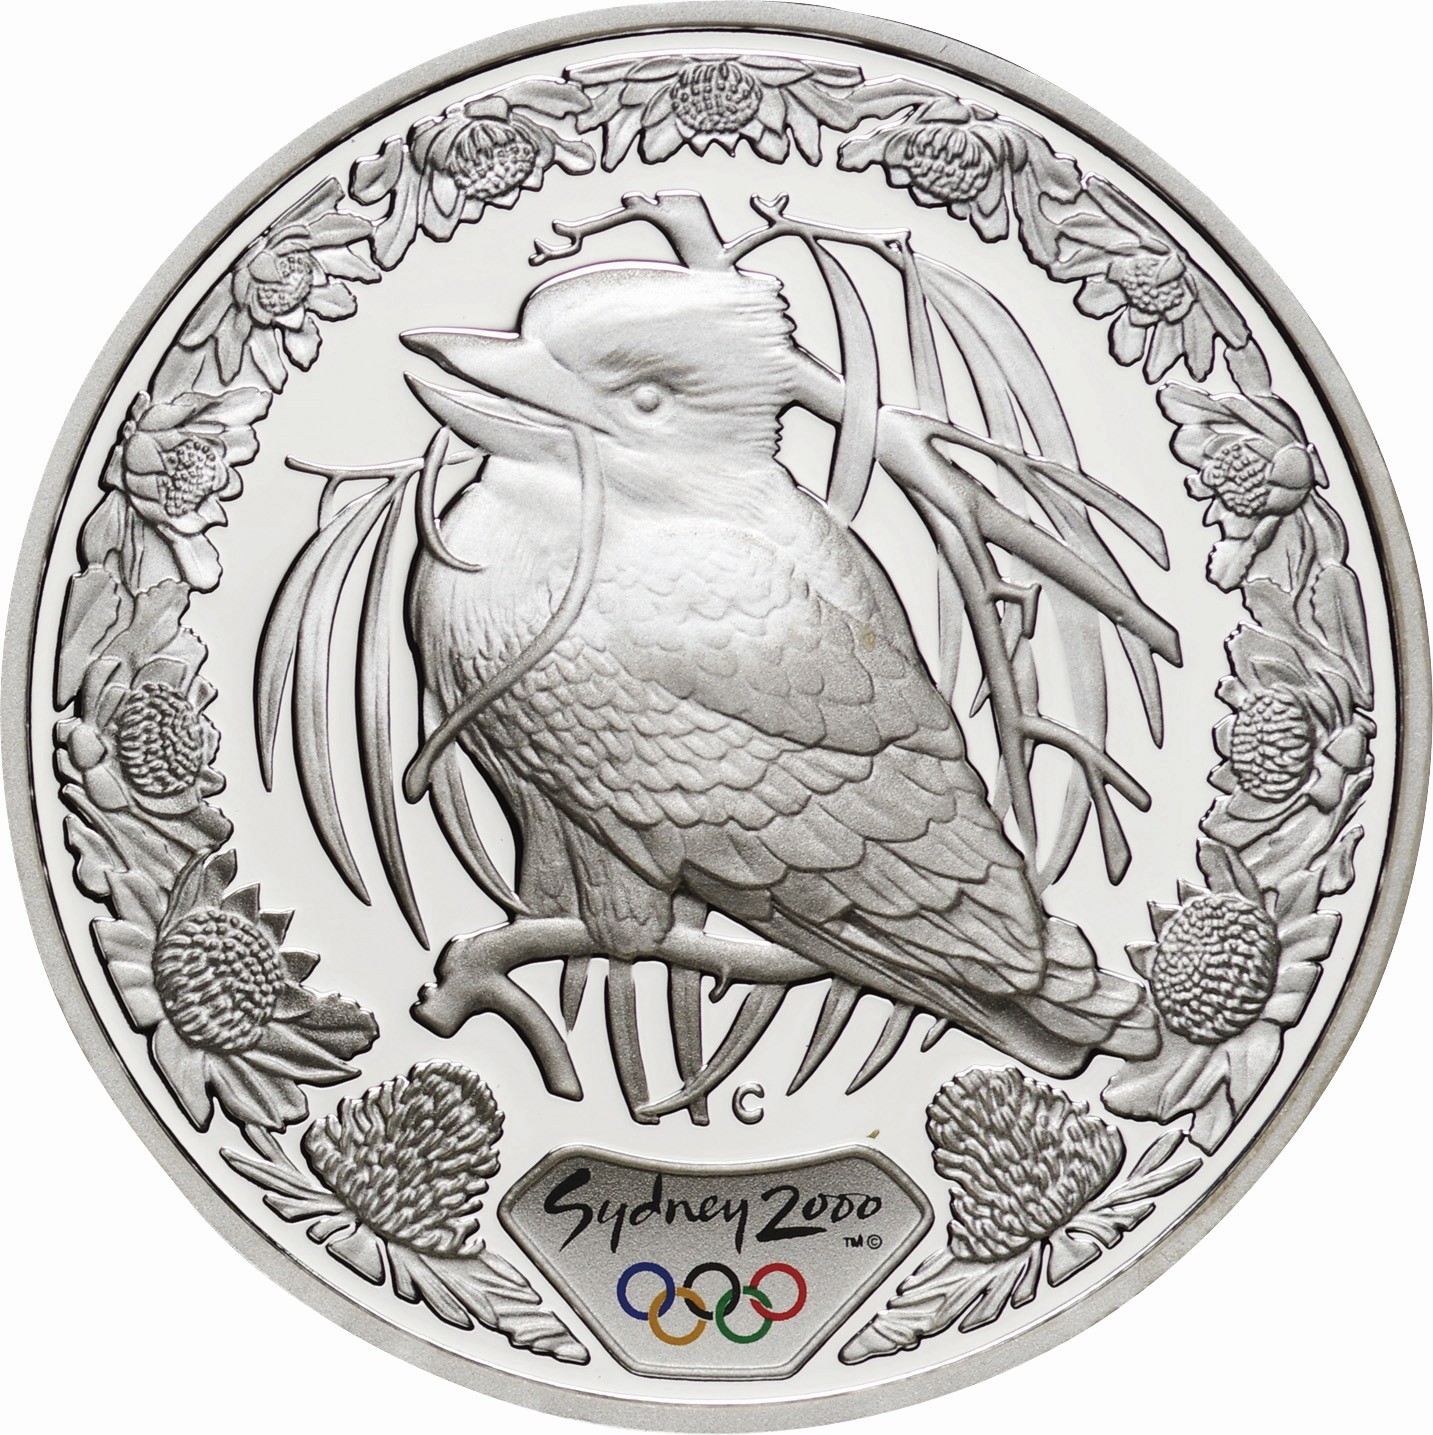 オーストラリア-Australia. Silver. 5ドル(Dollars). 2000シドニー 